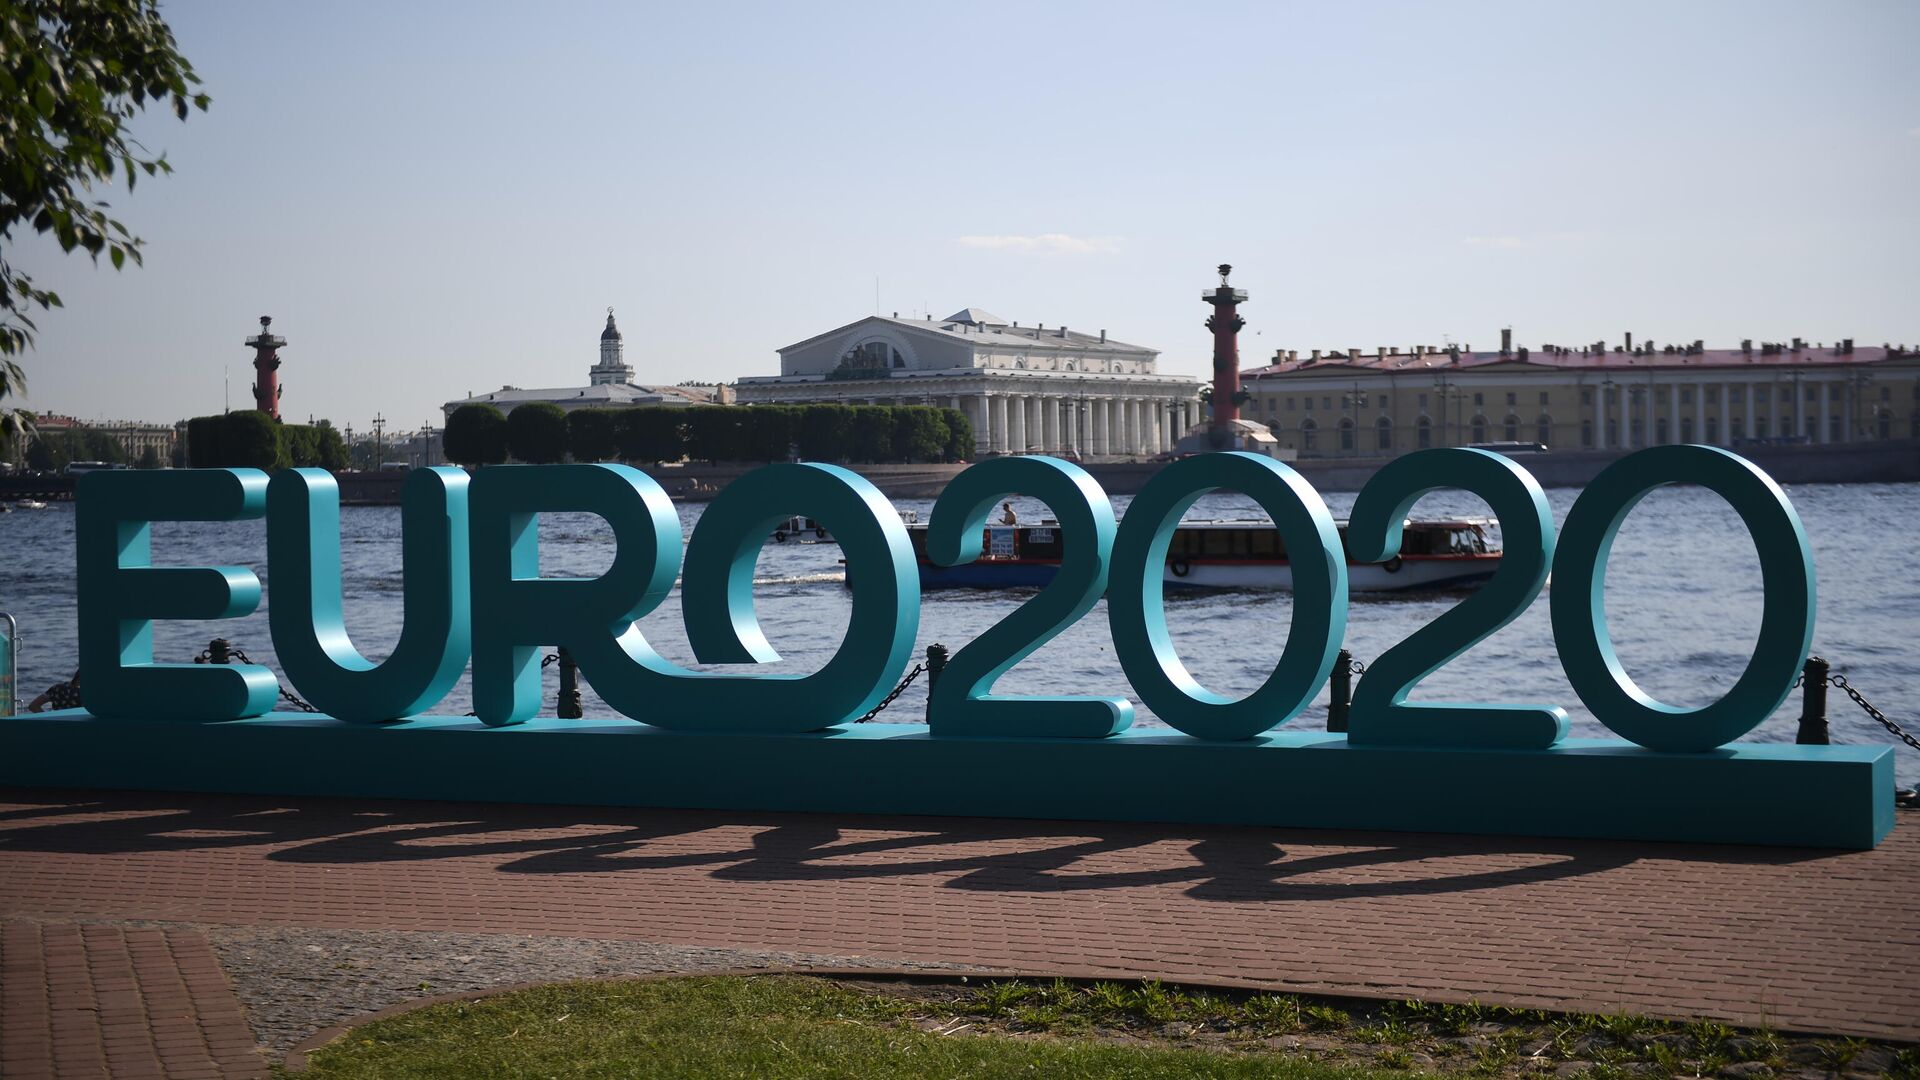 Открытие парка футбола Евро-2020 в Санкт-Петербурге  - РИА Новости, 1920, 08.09.2020